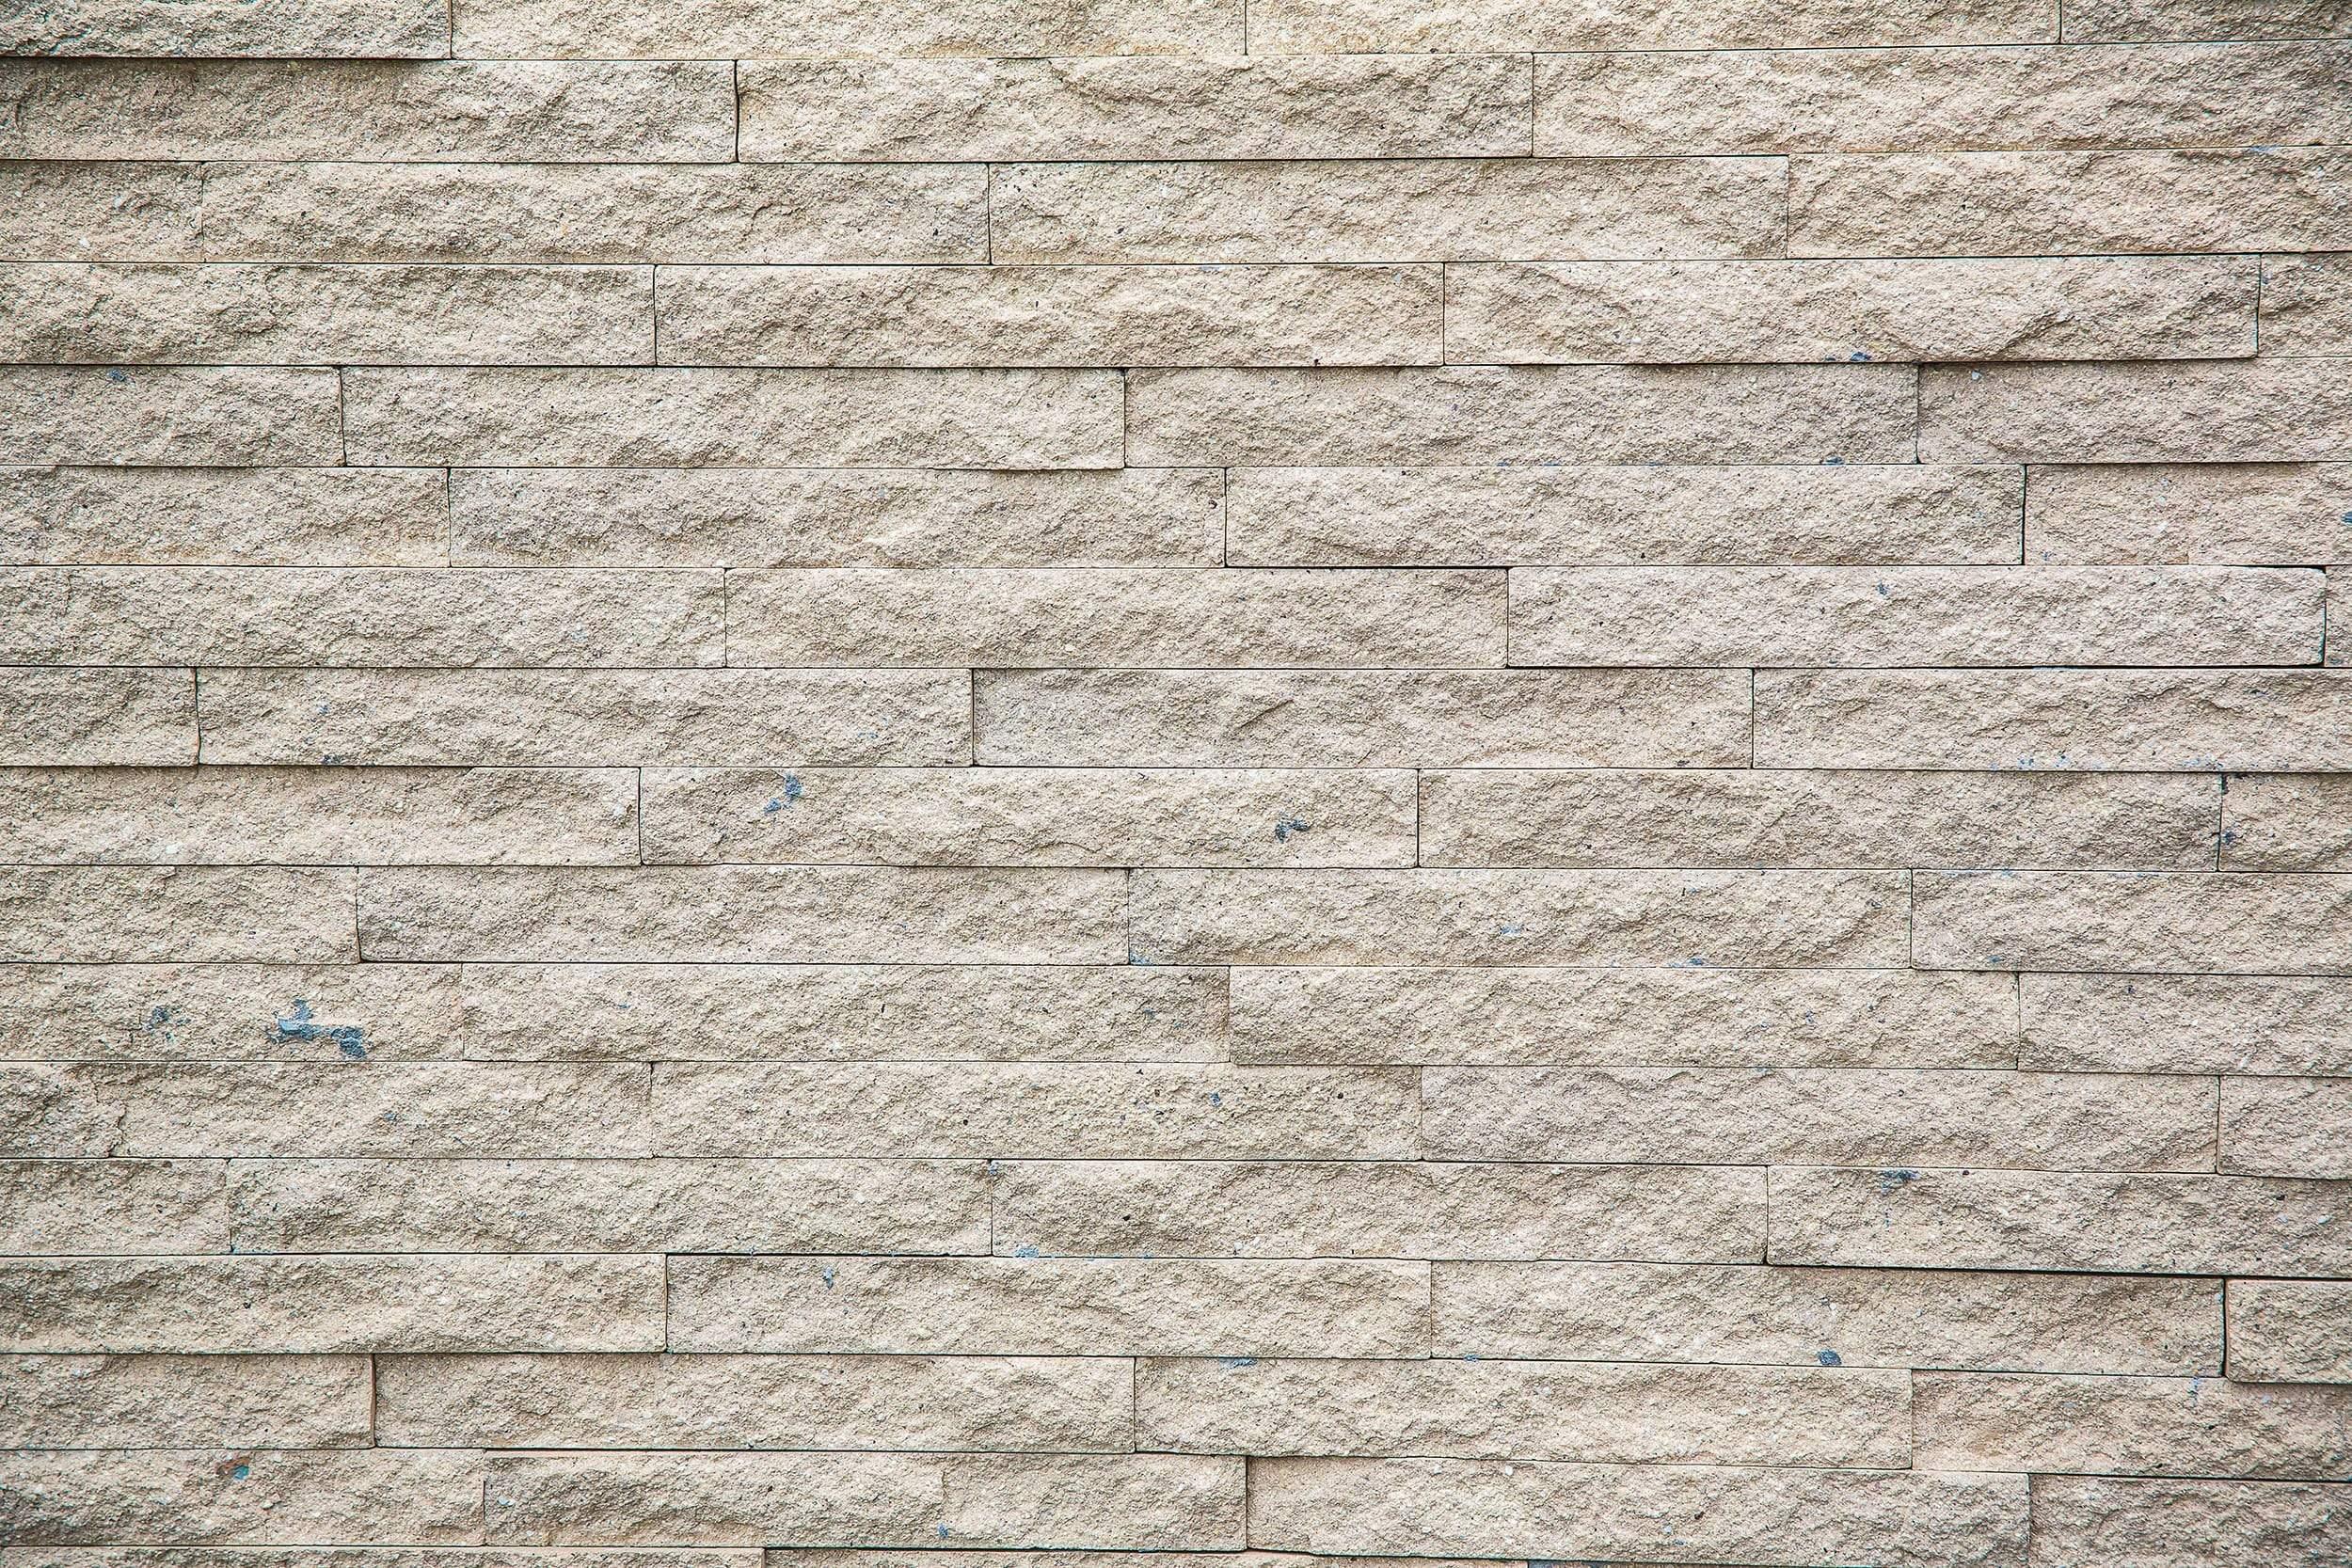 horizontal blocks textured bricks: GigaPixel Image